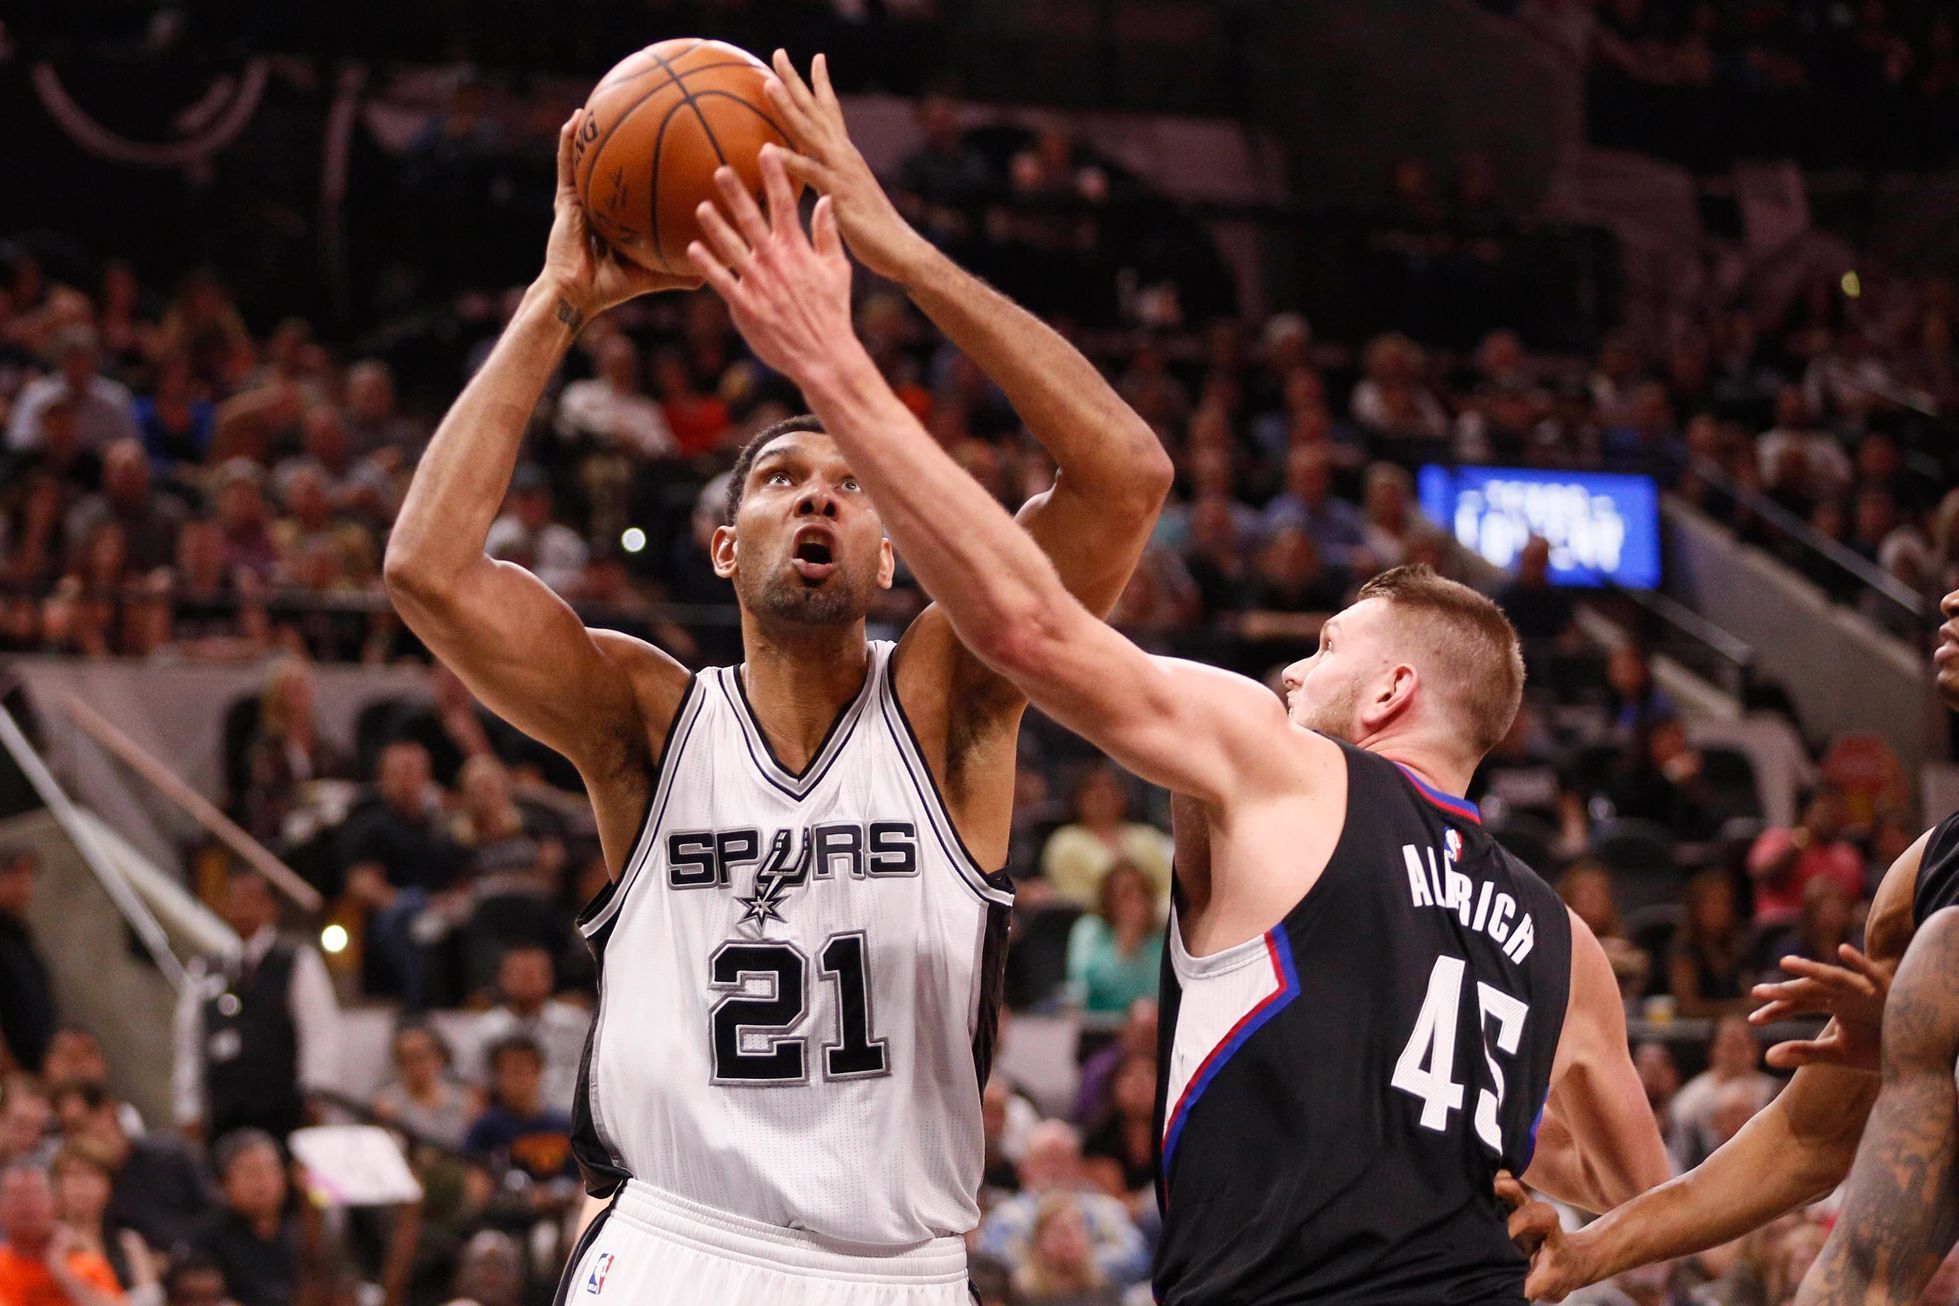 Los Angeles Clippers (Cole Aldrich) vs. San Antonio Spurs (Tim Duncan)